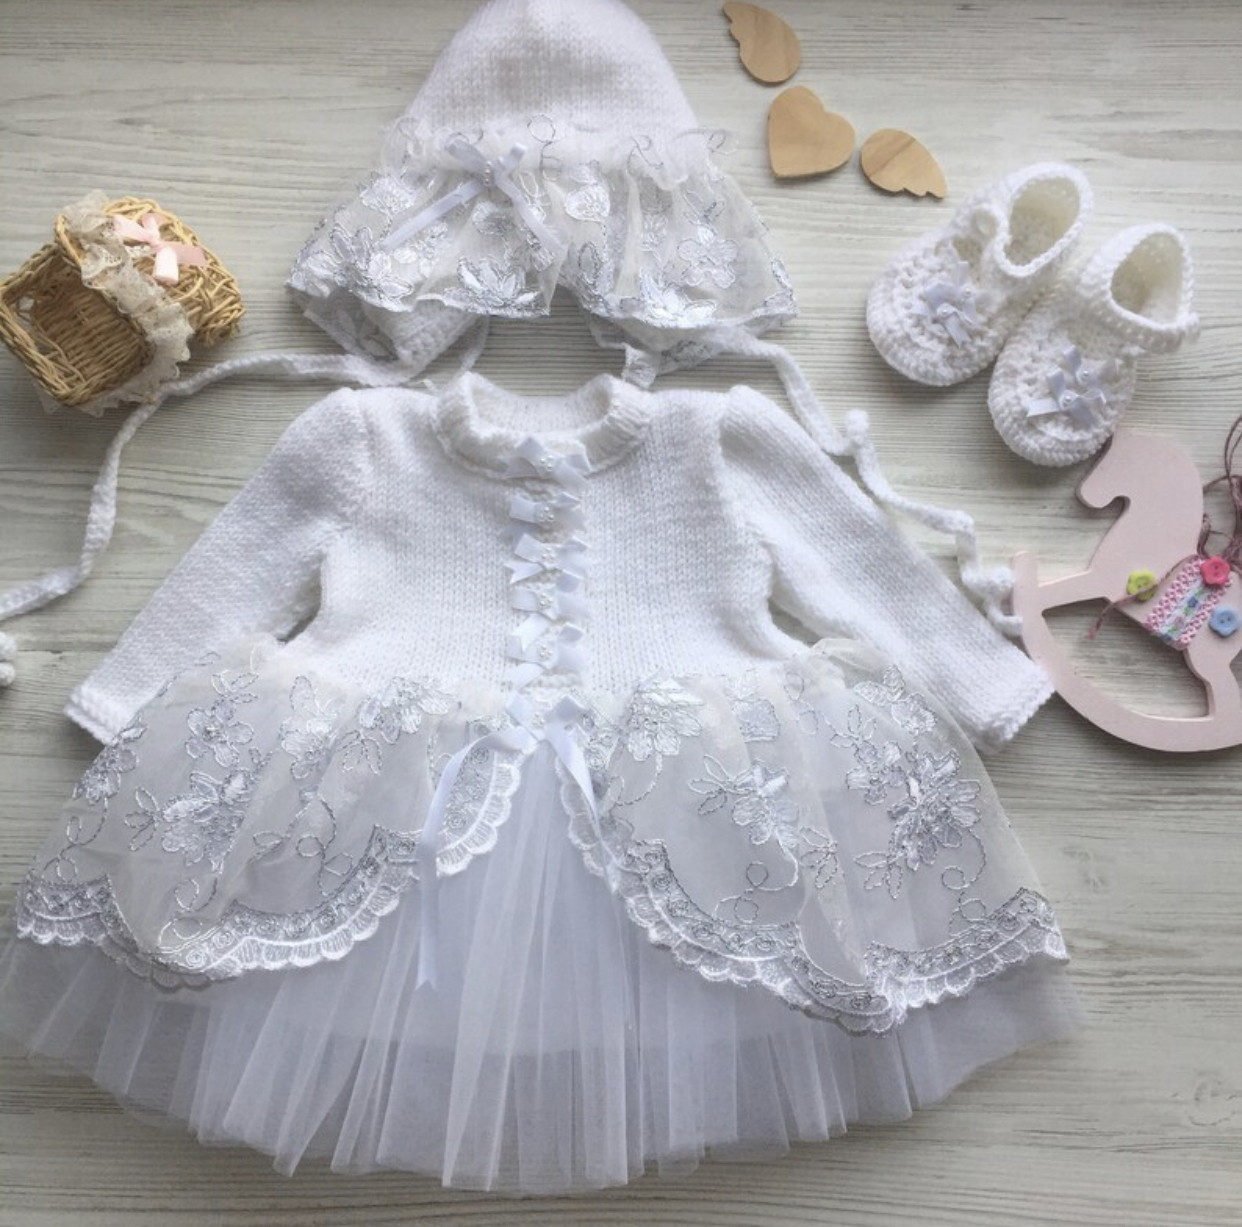 Комплект ручної в’язки для дівчинки: сукня з срібним мереживом, шапочка, пінетки.